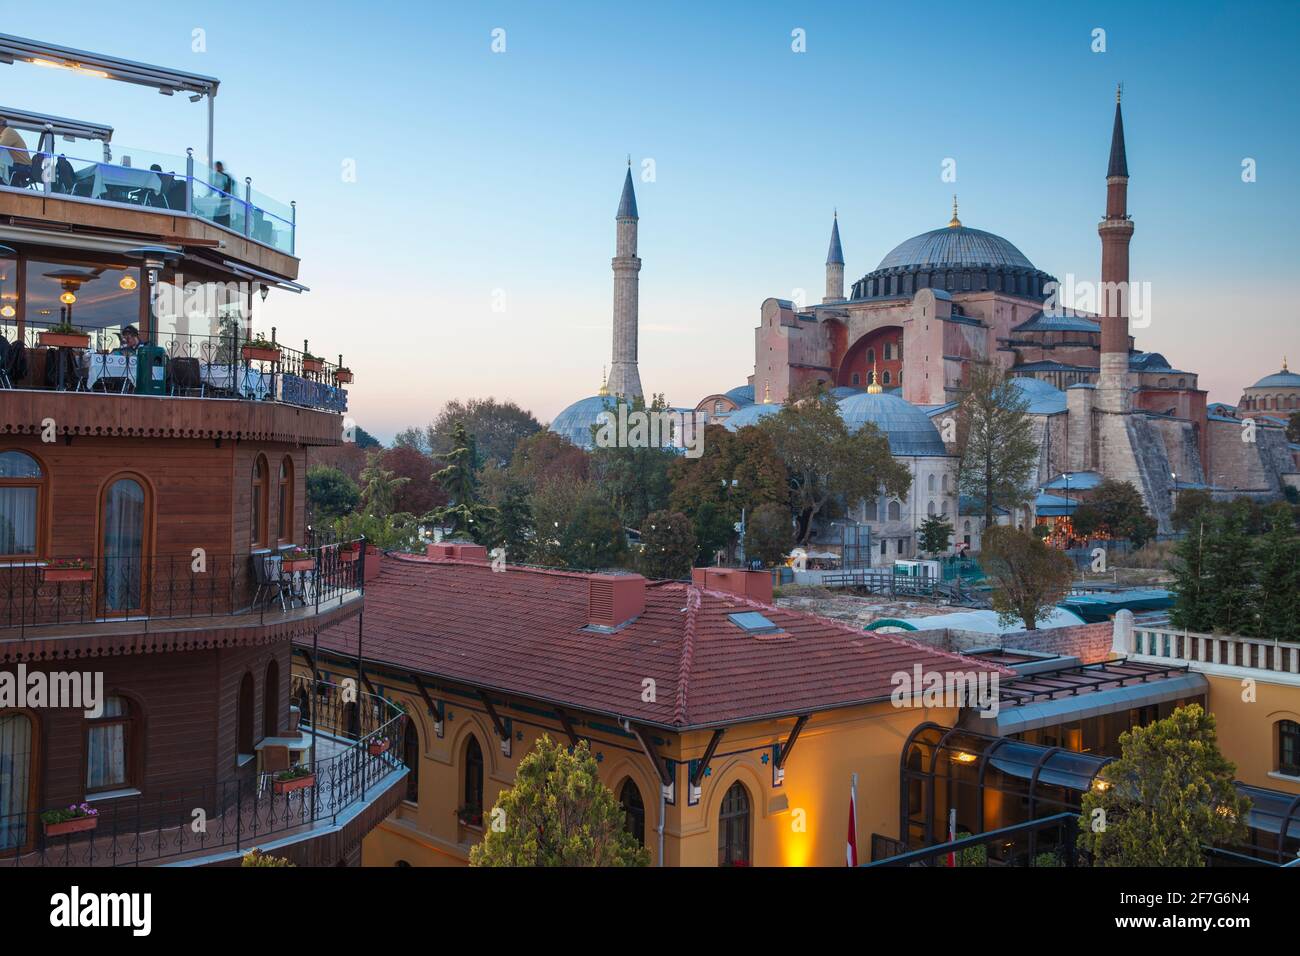 Turquía, Estambul, Vista del restaurante de la azotea del hotel Seven Hills, el hotel Four Seasons y la mezquita de Hagia Sophia - Aya Sofya Foto de stock